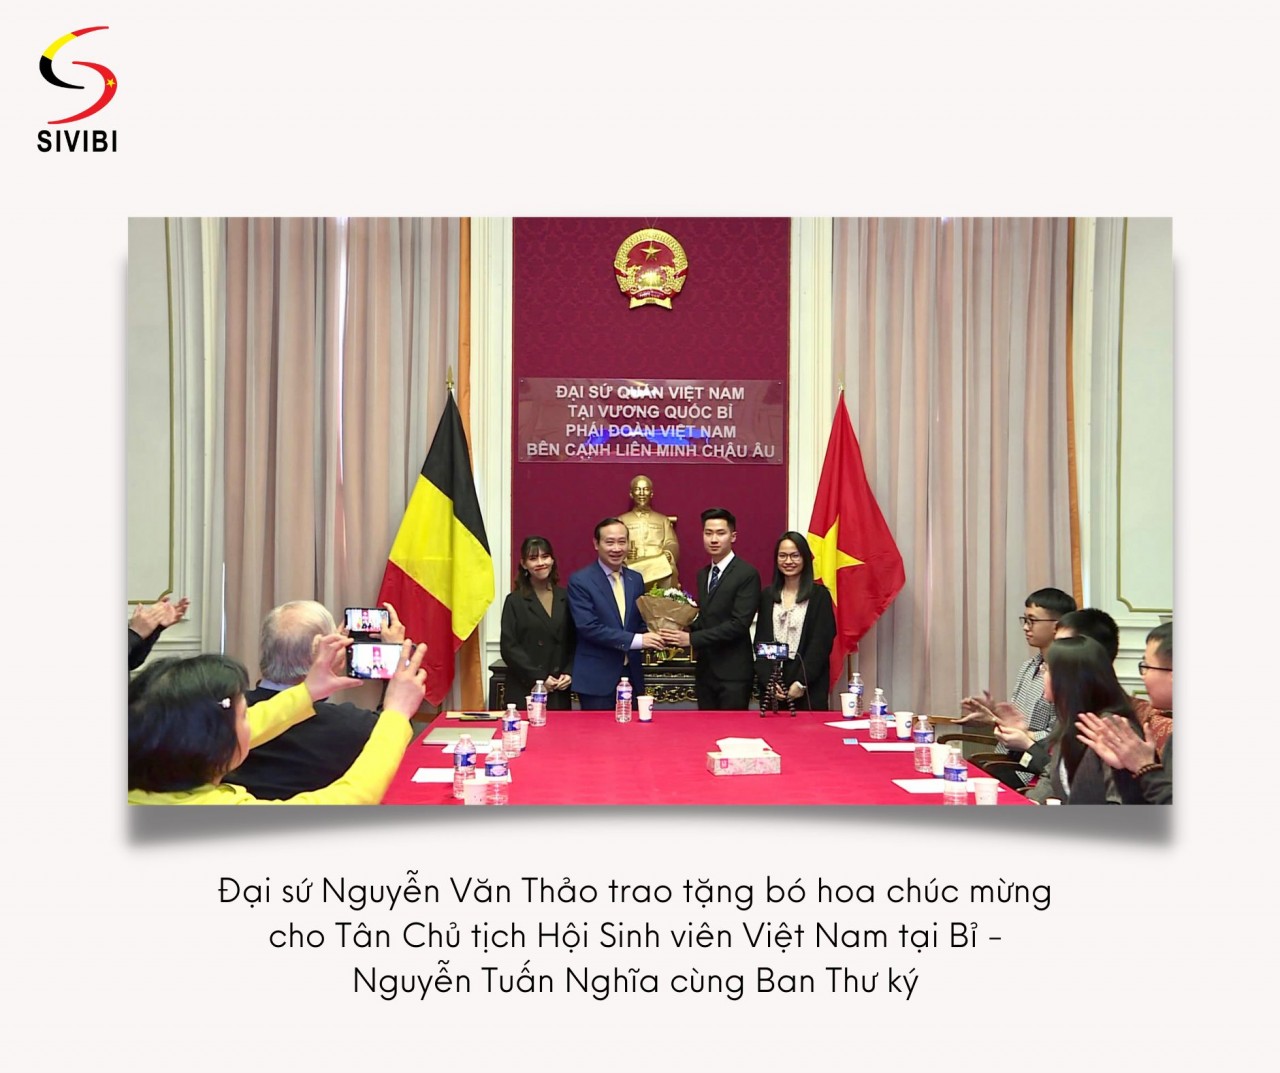 Hội Sinh viên Việt Nam tại Bỉ nỗ lực gắn kết cộng đồng